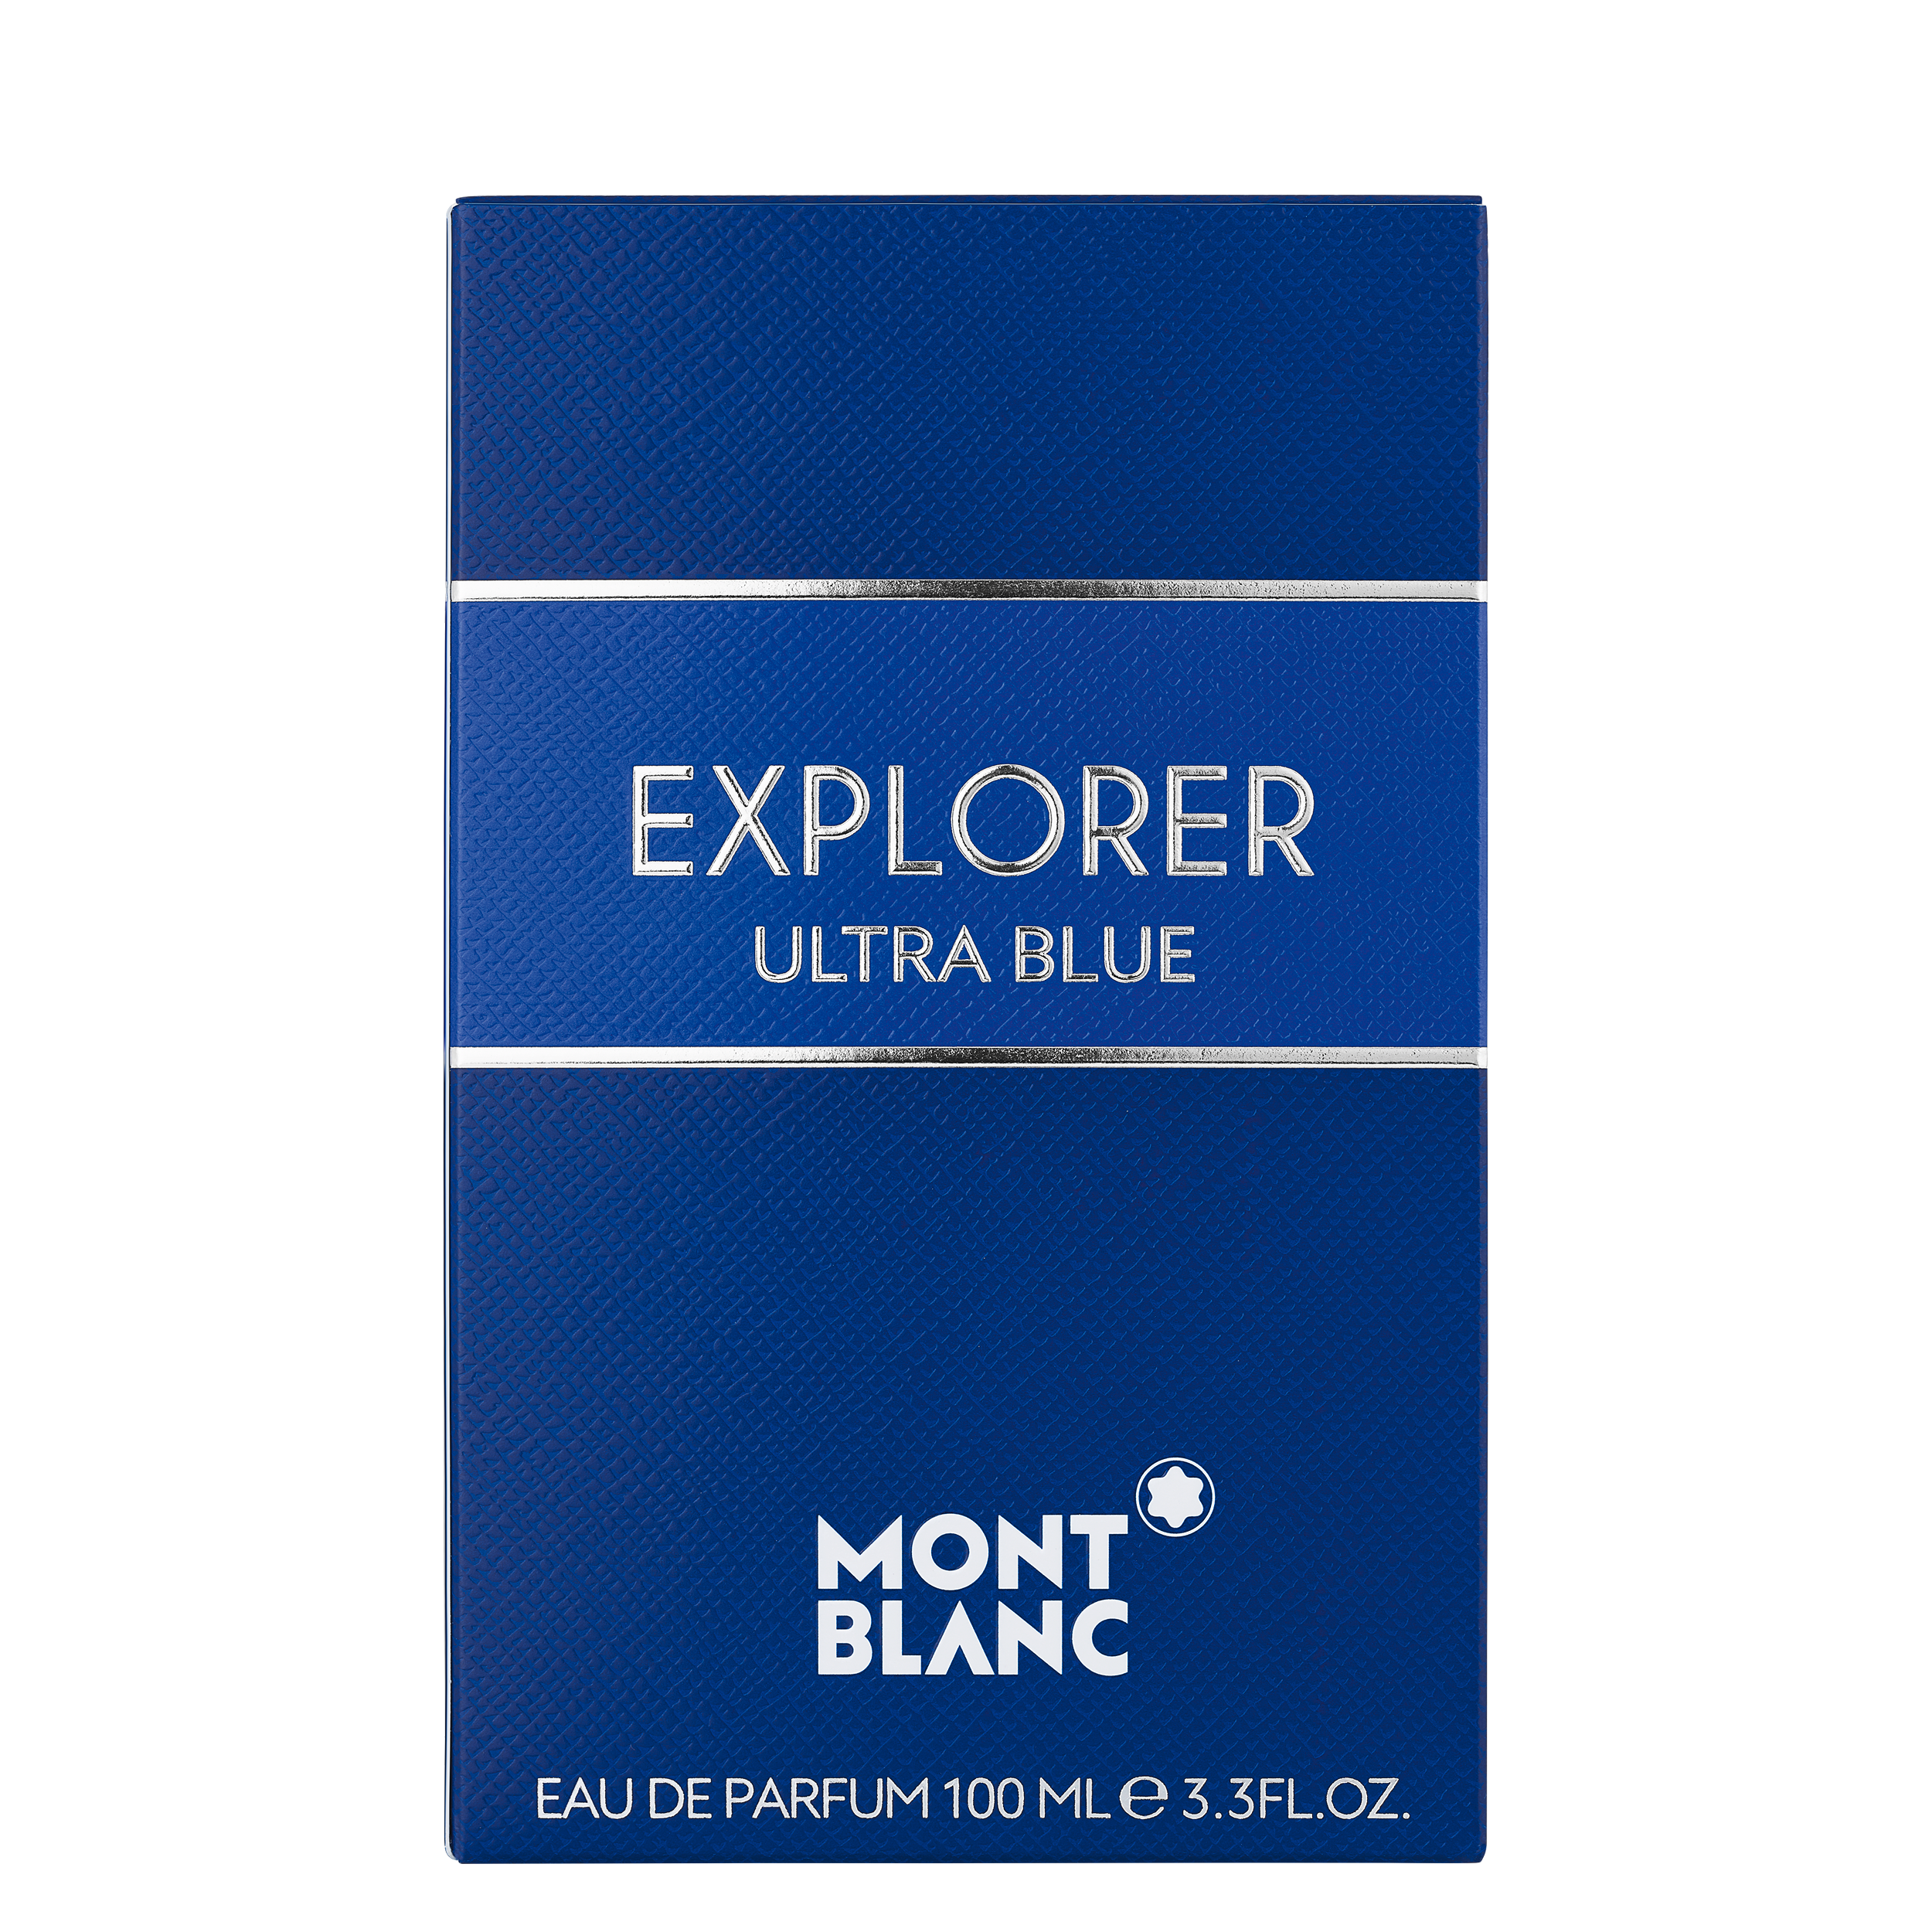 Montblanc Explorer Ultra Blue Eau de Parfum 100 ml, image 2